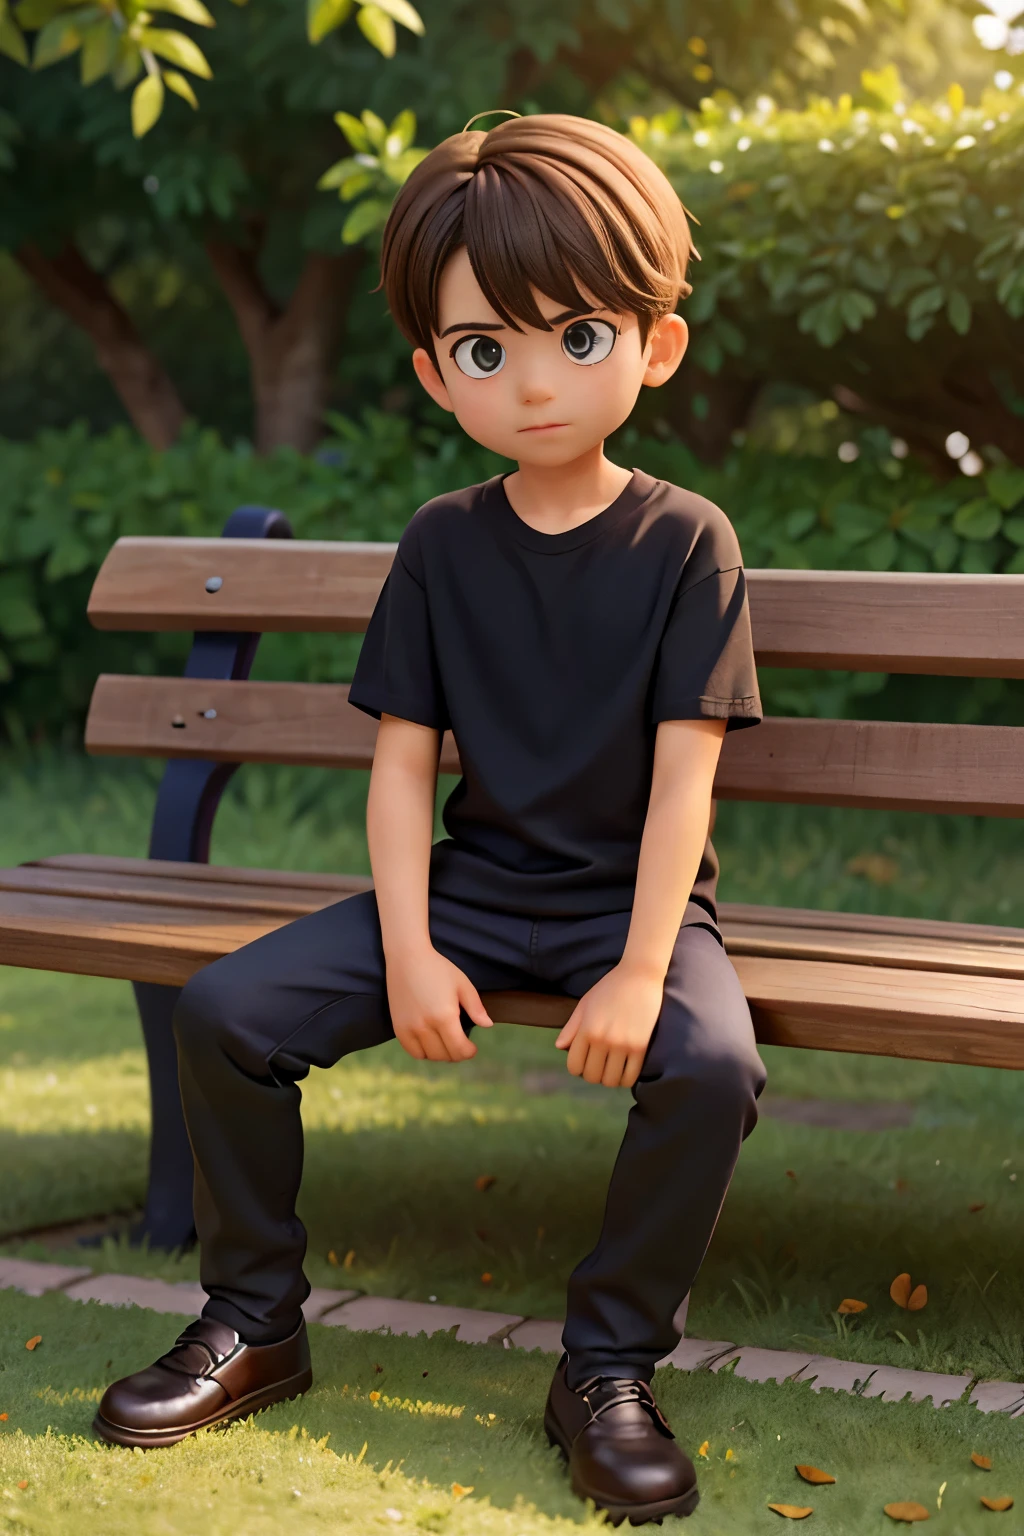 圖片顯示一個男孩坐在木凳上, 位於柵欄附近. 這個男孩穿著一件黑色襯衫，似乎正在看著鏡頭. 長椅位於場景中央, 柵欄延伸到影像的左側和右側. 男孩的姿勢和長凳的存在表明這可能是公園或類似的戶外環境.以動畫風格產生此圖像